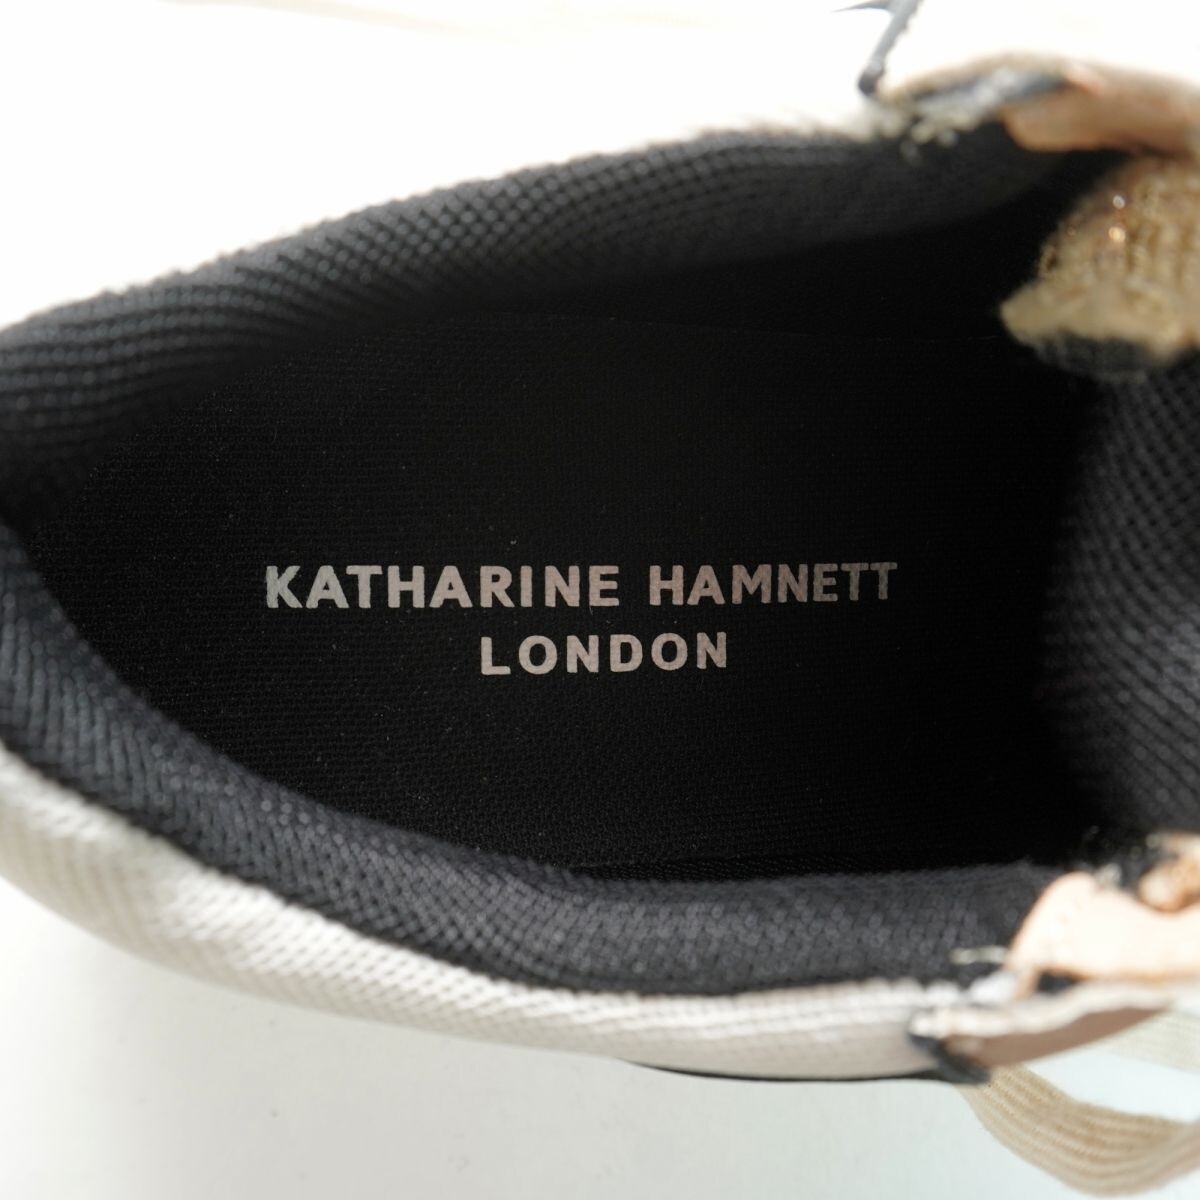 KATHARINE HAMNETT LONDON Katharine Hamnett London 24.0 sneakers tweed leather beige /NC30